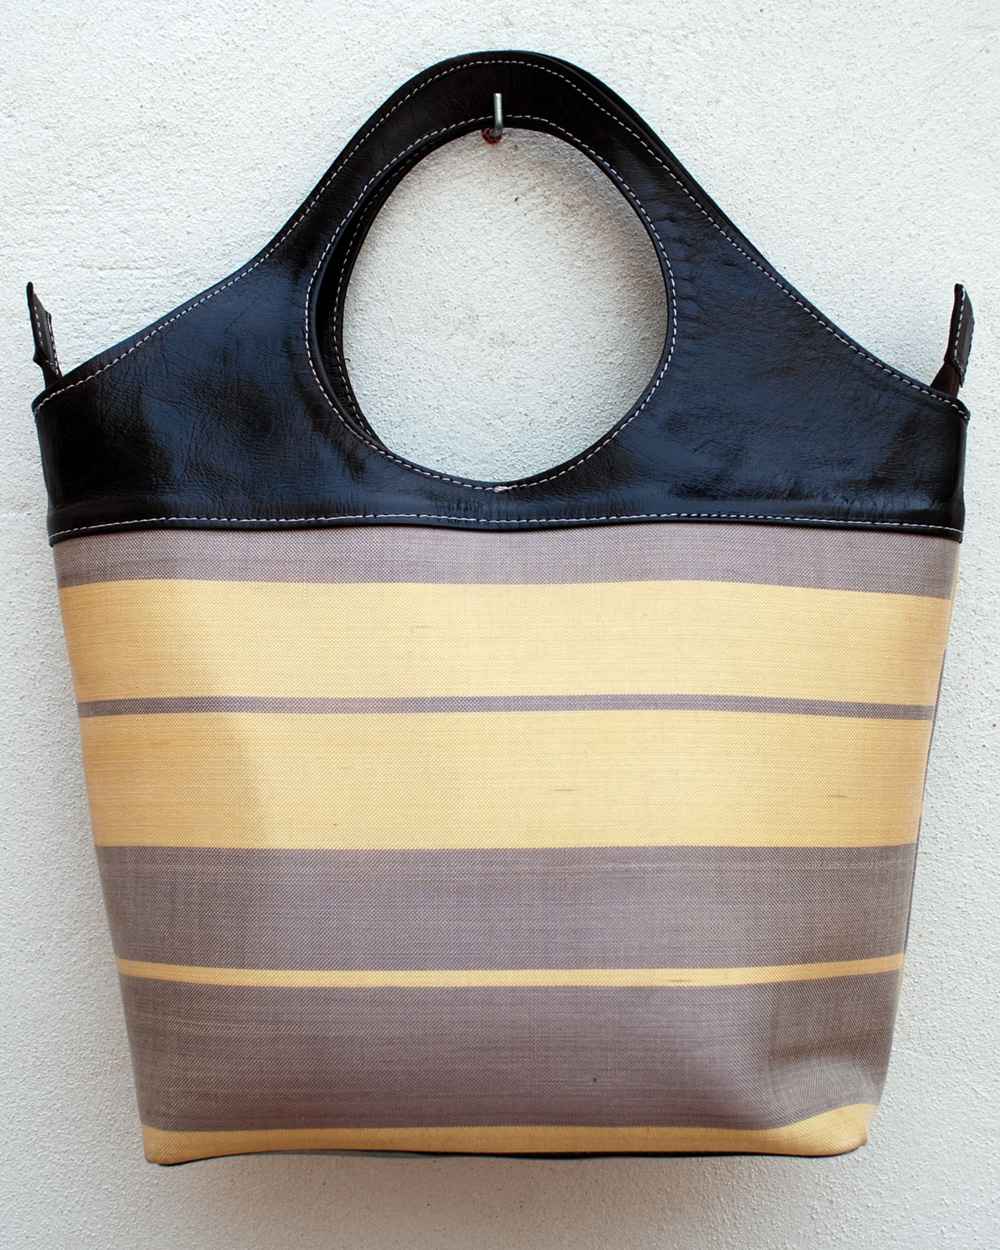 Grande borsa tote in pelle nera con tessuto a strisce di colore grigio e giallo tenue